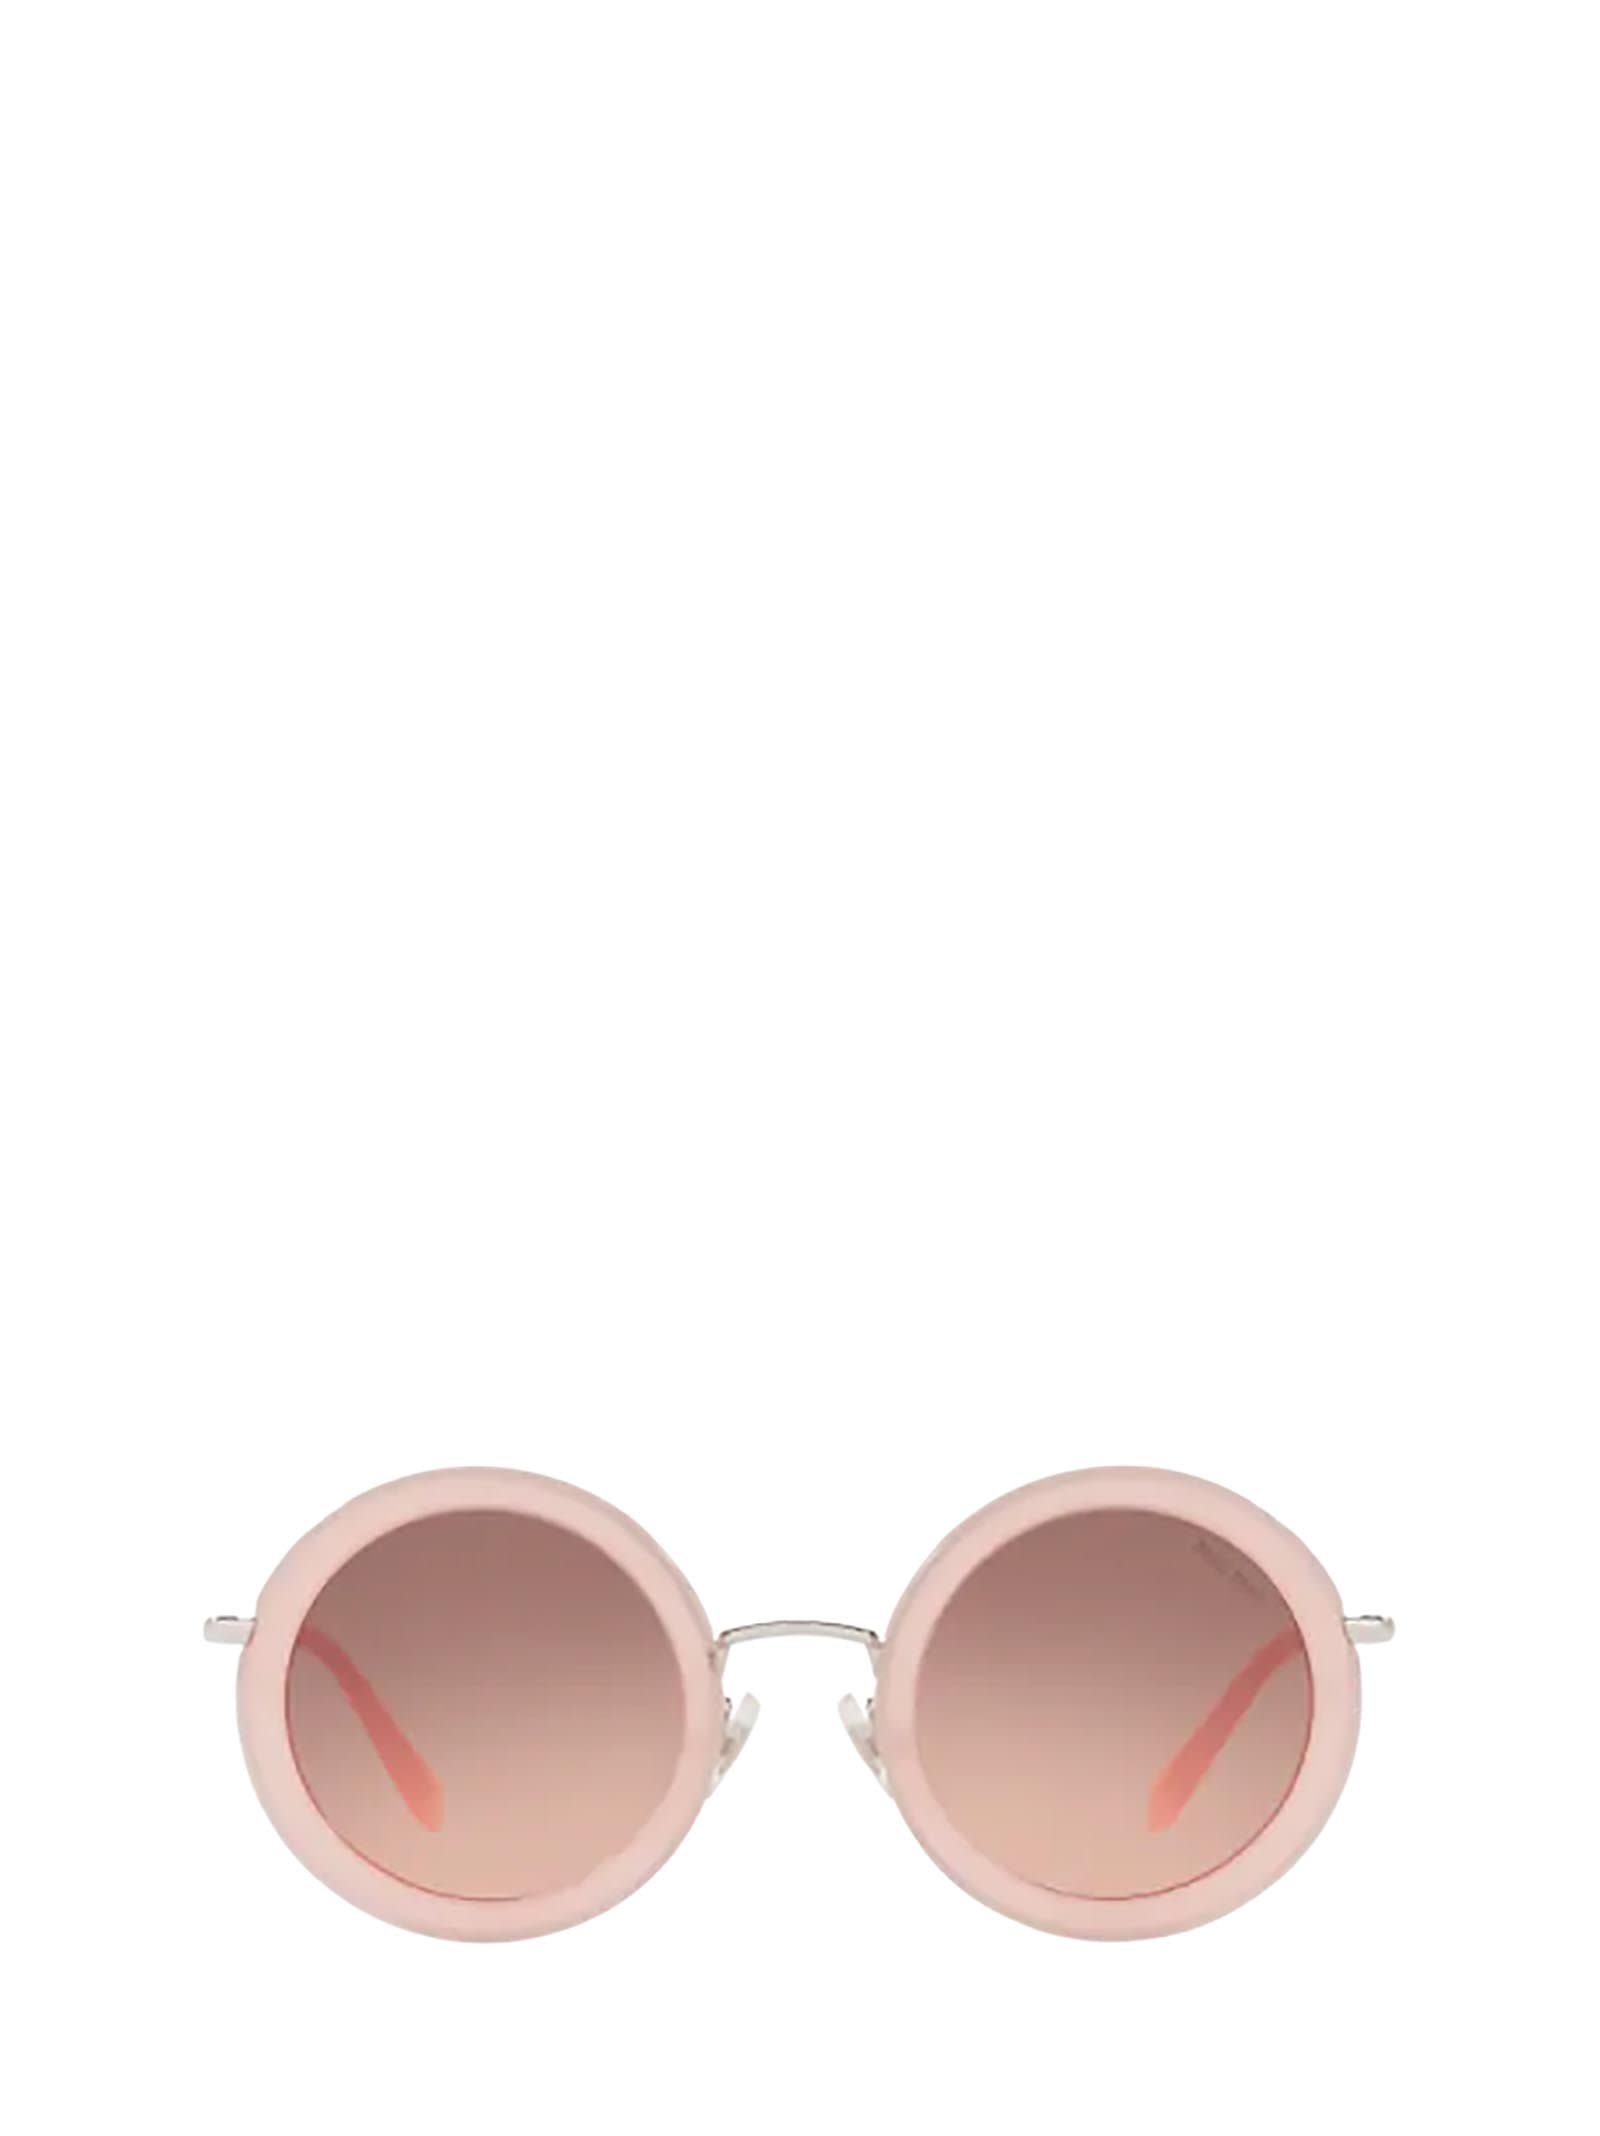 Miu Miu Eyewear Miu Miu Mu 59us Opal Pink Sunglasses